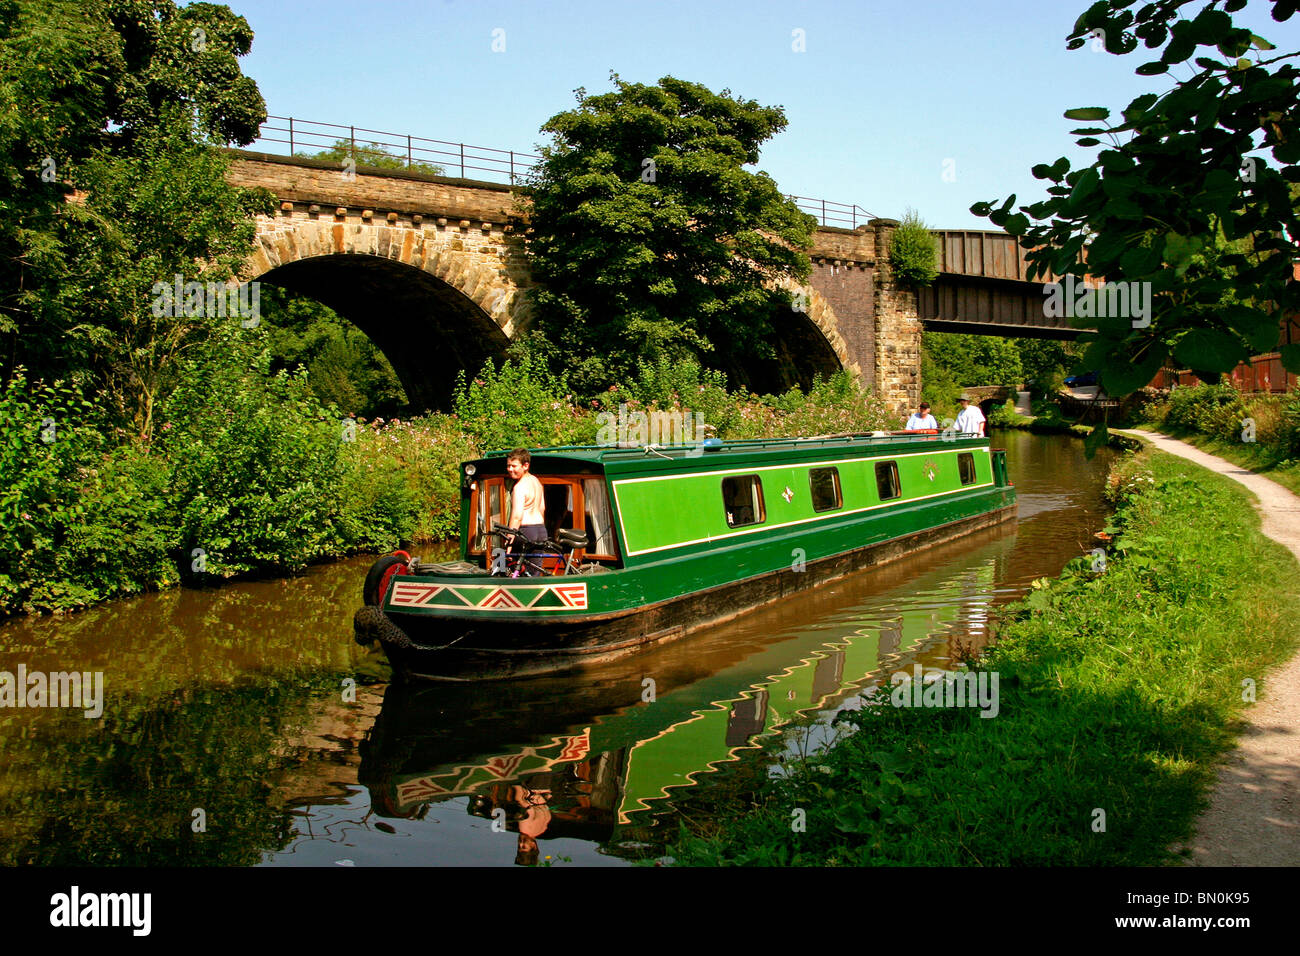 UK, England, Cheshire, Stockport, Marple, narrowboat on Peak Forest Canal viaduct, alongside railway bridge Stock Photo